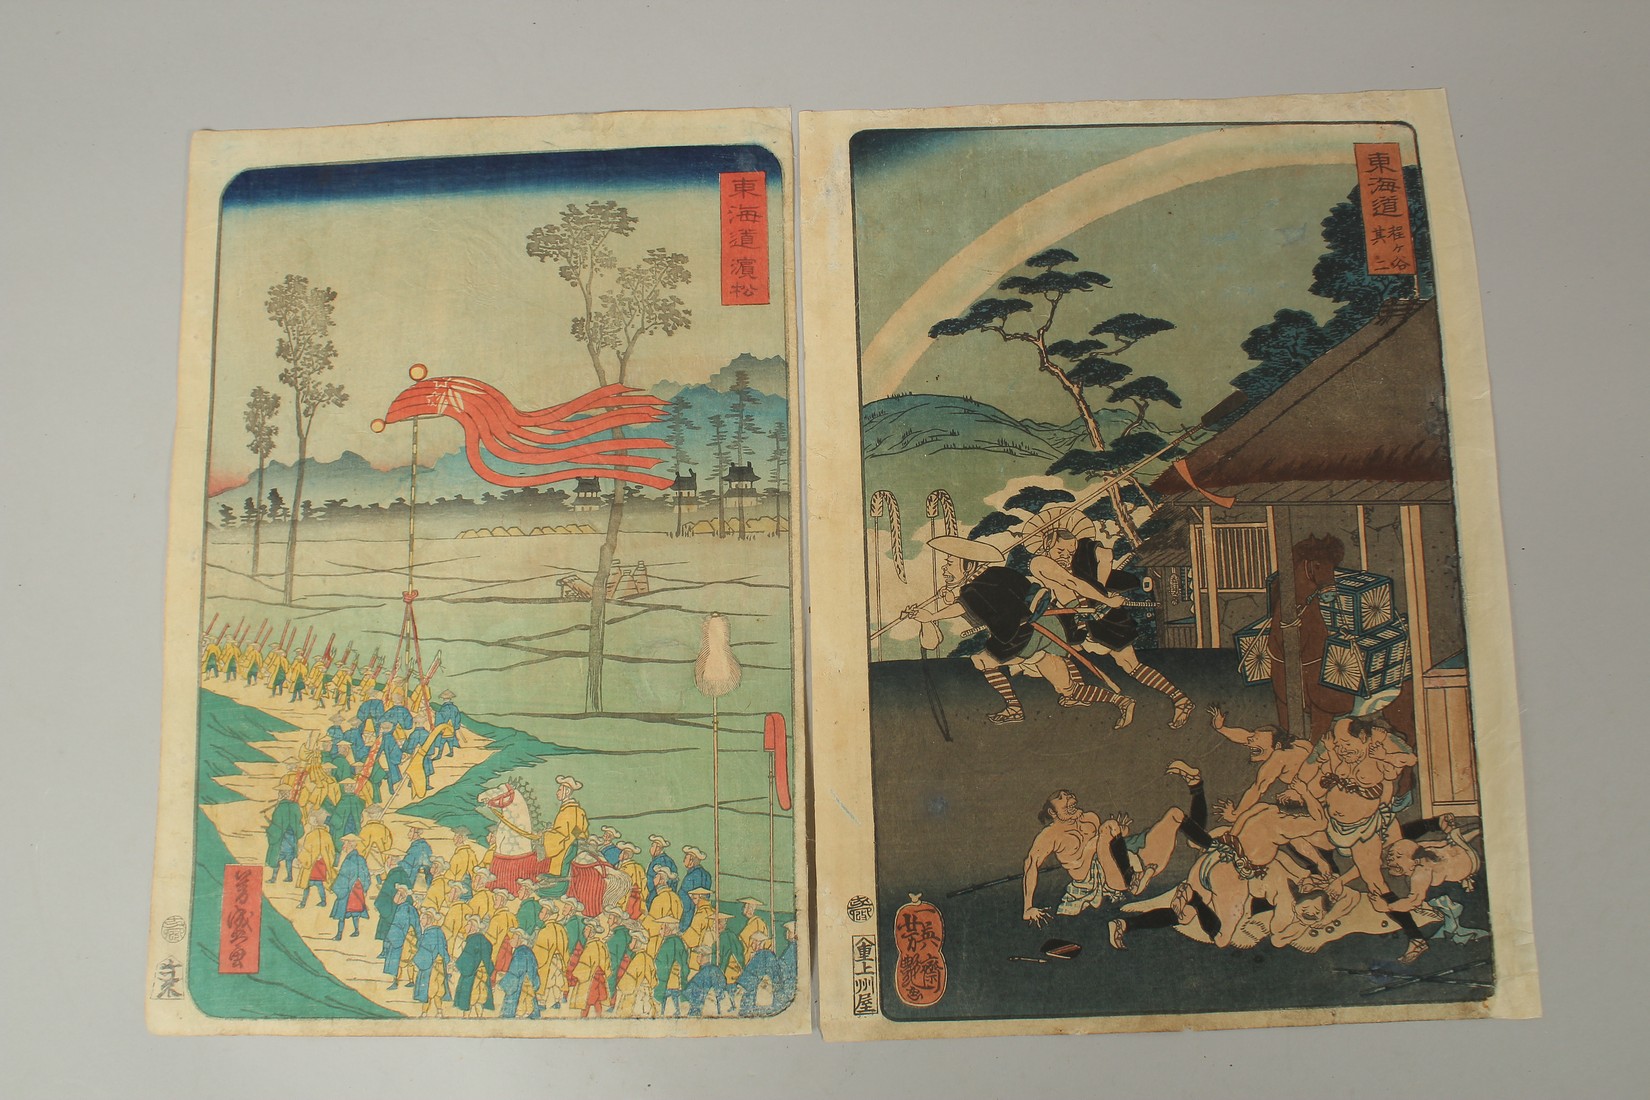 YOSHITSUYA UTAGAWA (1822-1866) & YOSHIMORI UTAGAWA (1830-1885): FROM THE SERIES OF TOKAIDO, 1863,